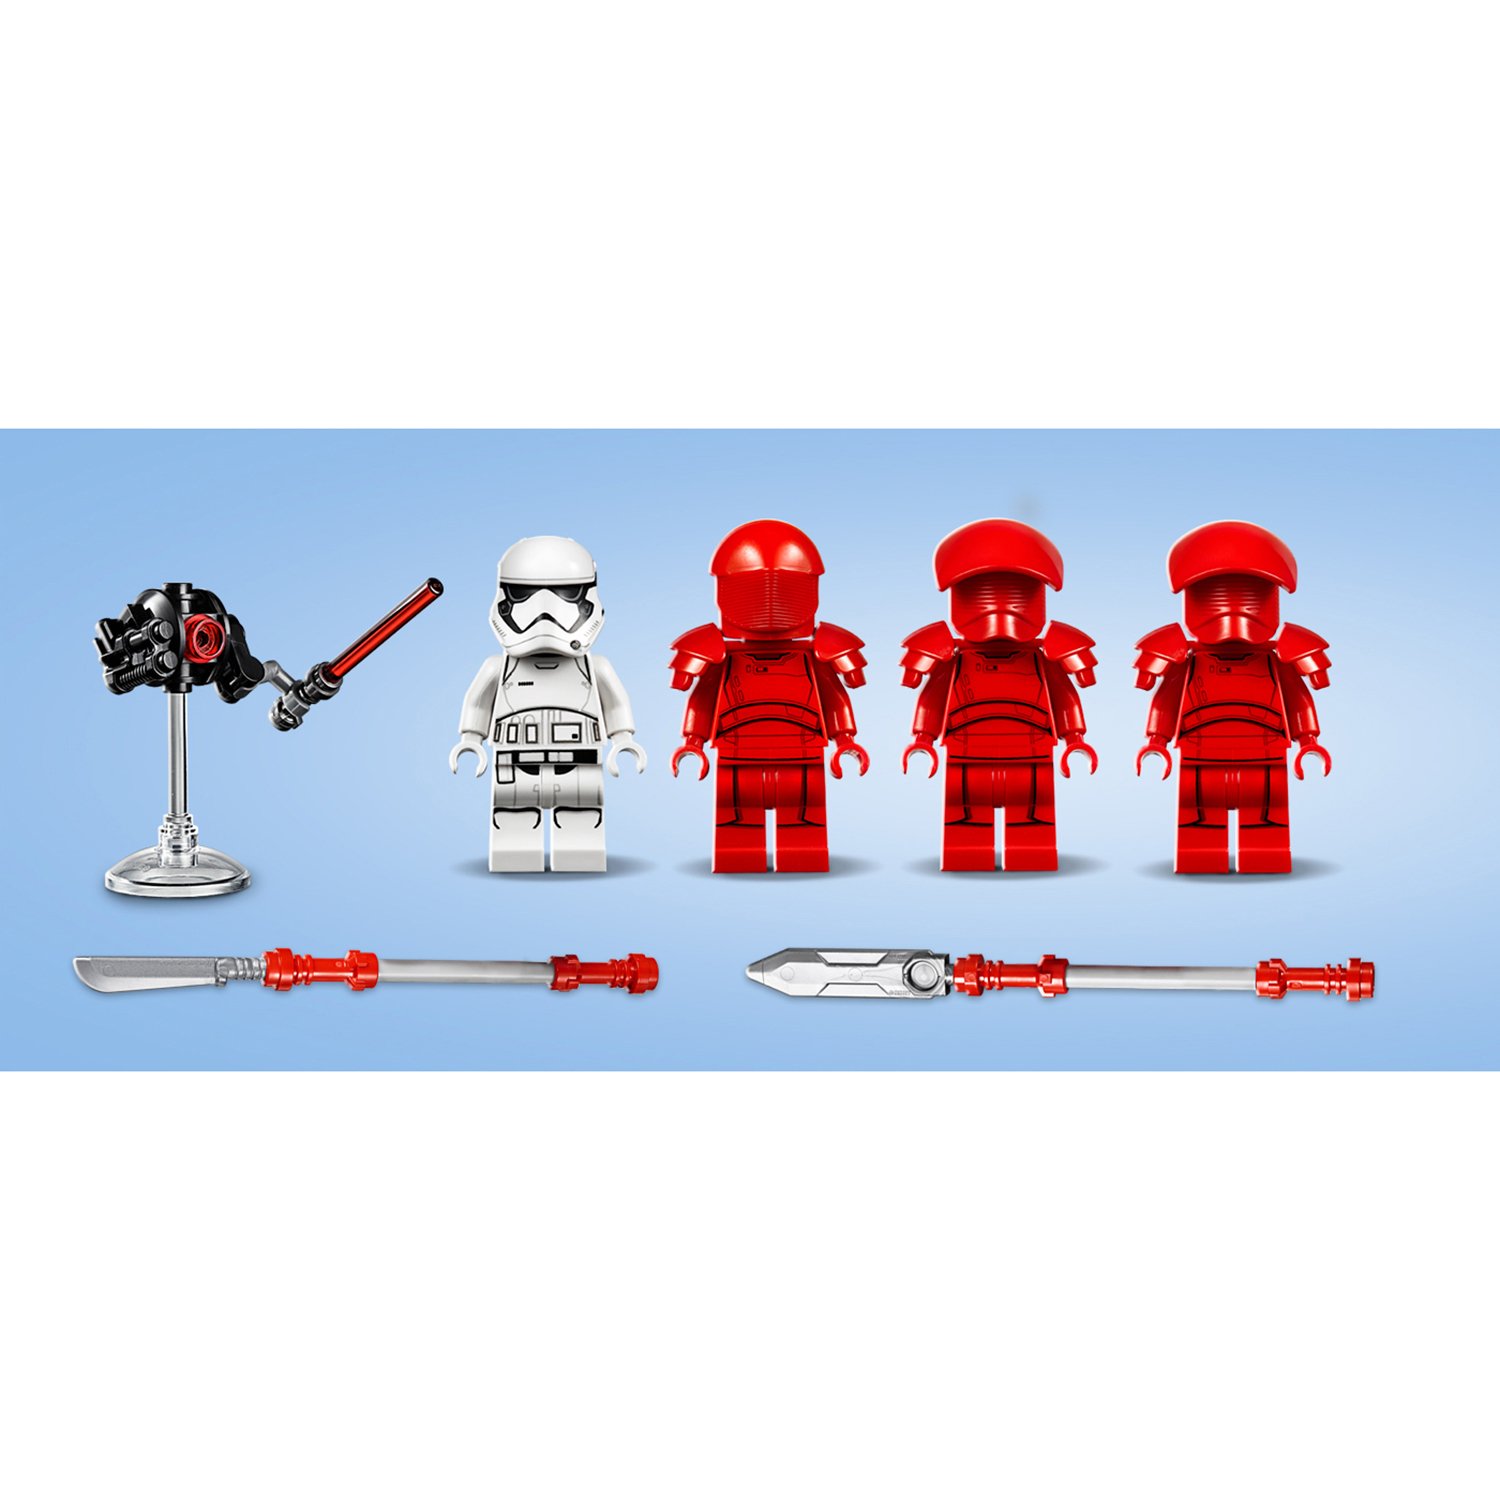 Конструктор Lego Star Wars - Боевой набор Элитной преторианской гвардии  